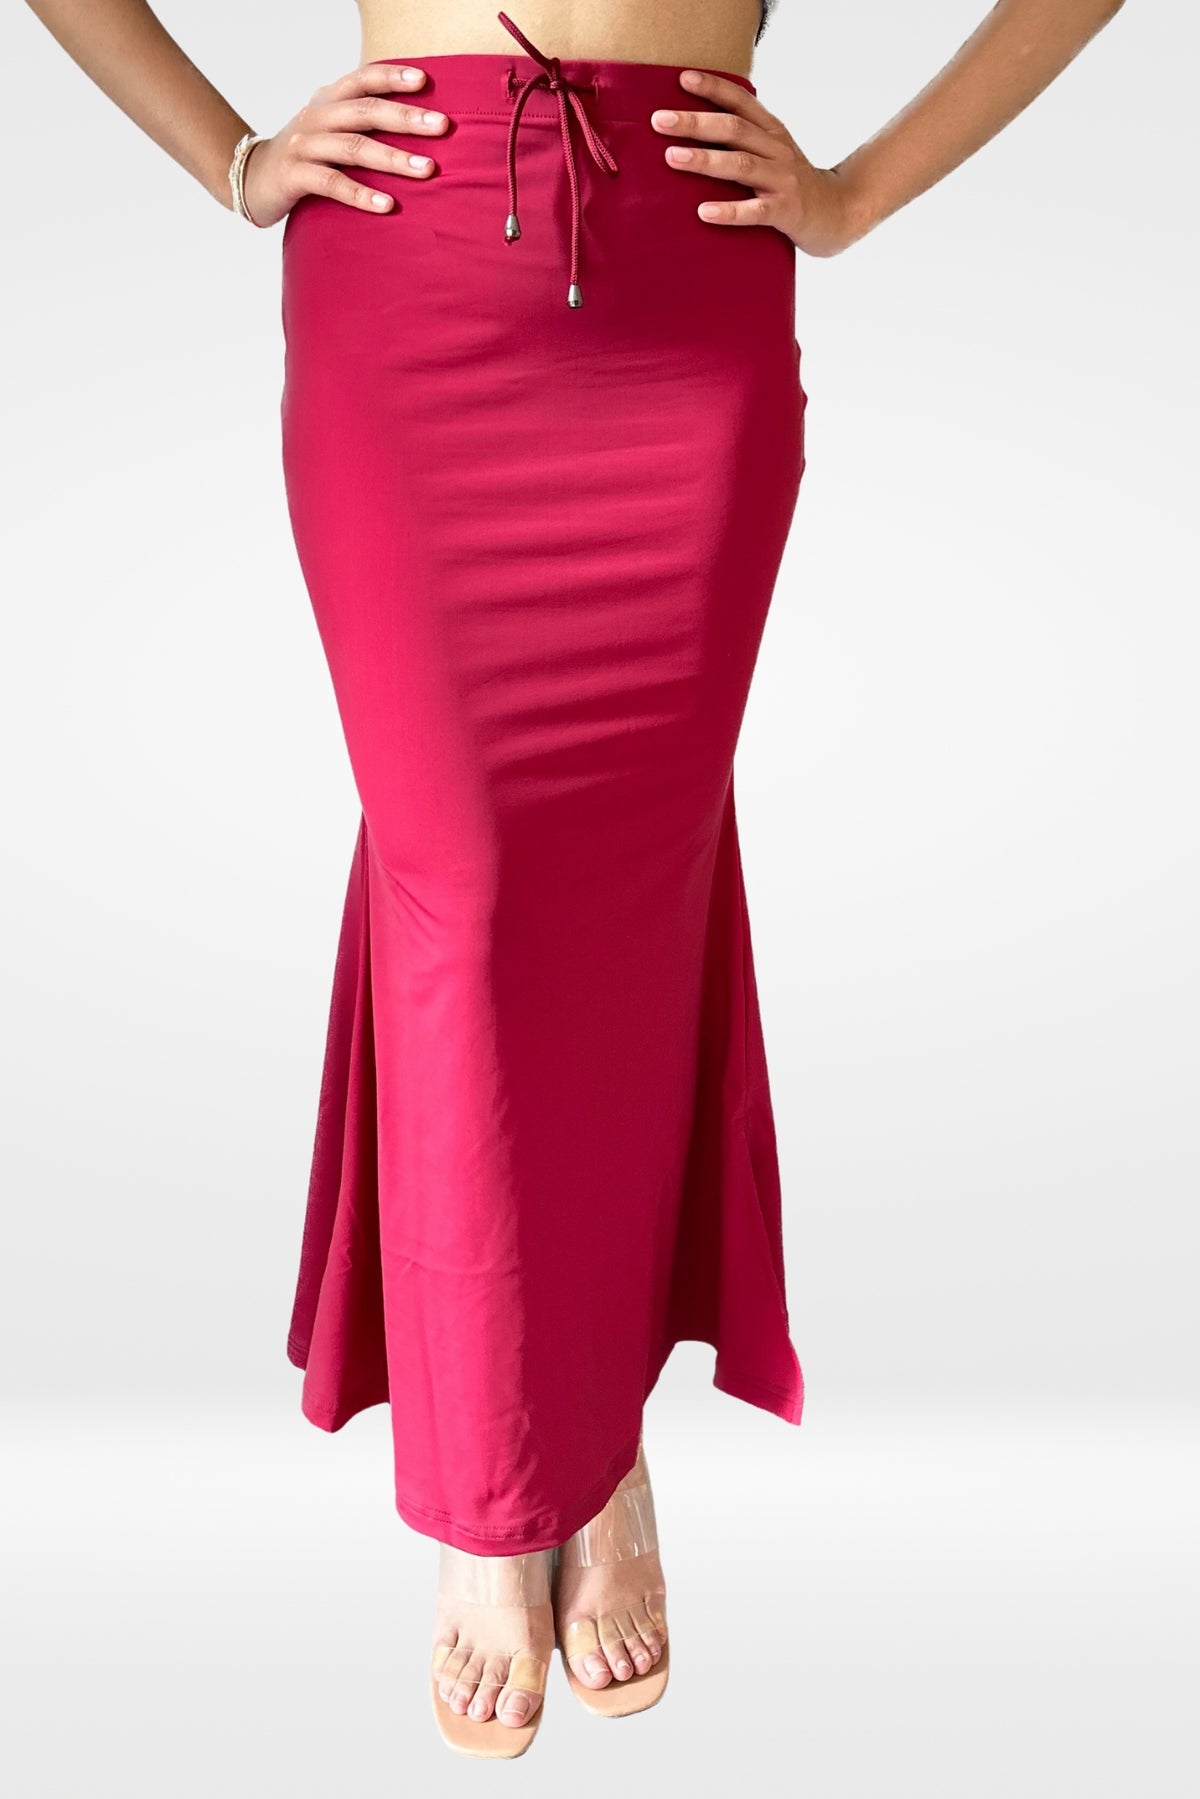 Buy Dermawear Women's Saree Shapewear SS-406 - Red online